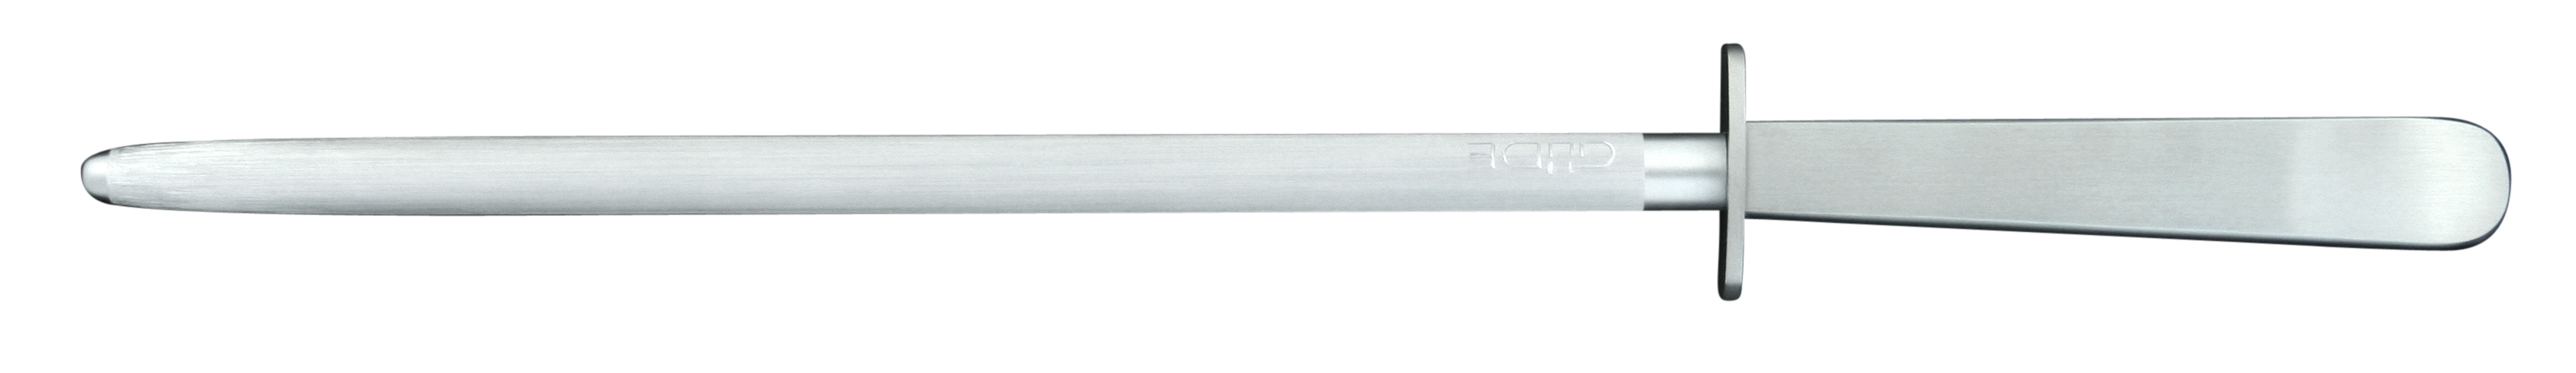 Güde Kappa runder Wetzstahl 26 cm / Klinge und Griff aus CVM-Stahl